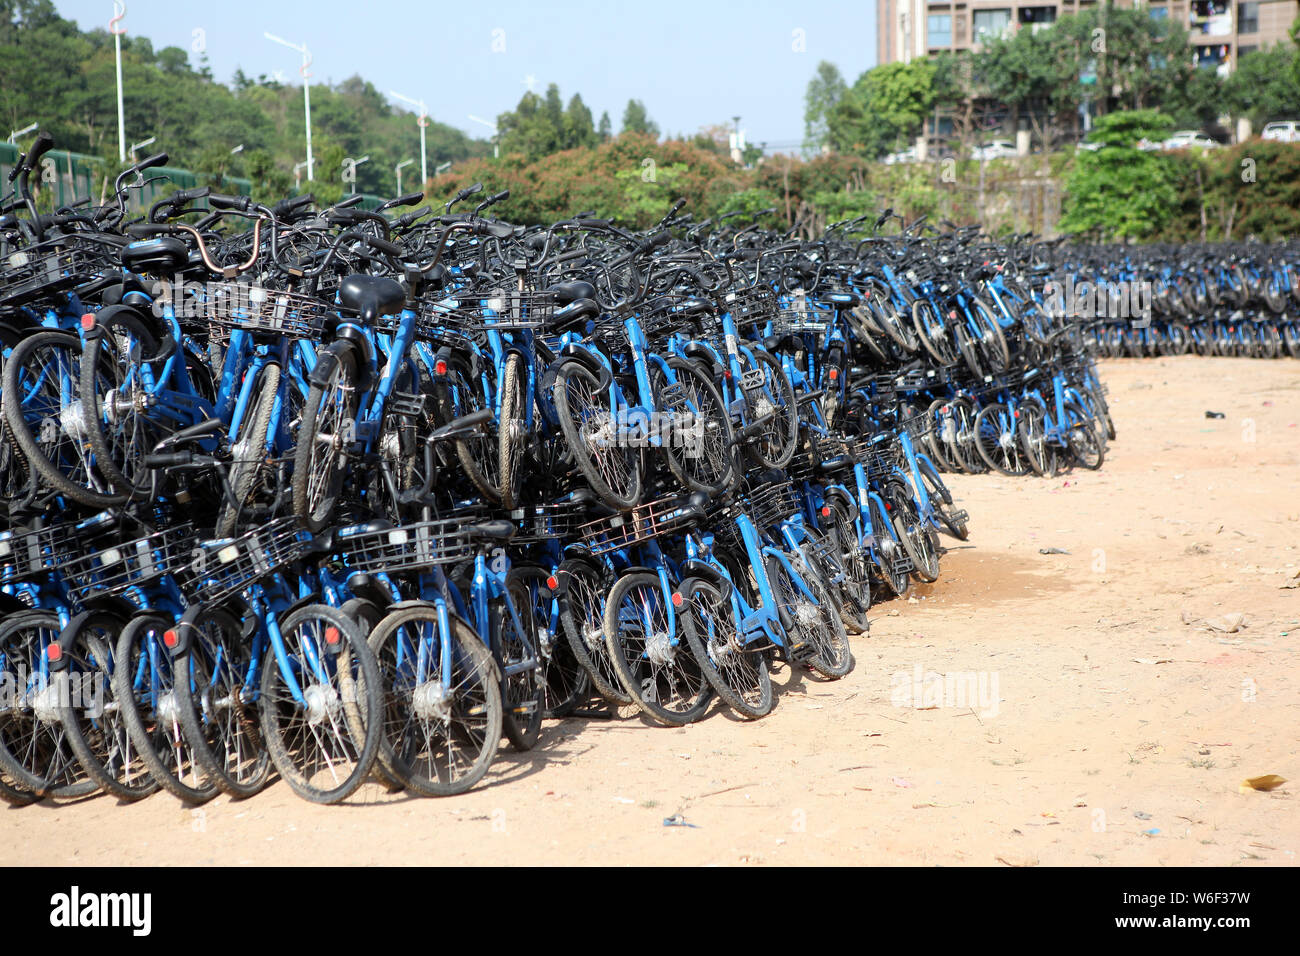 Ein Blick auf Bluegogo Gemeinschafts-Fahrräder der chinesischen Taxifahrer hageln und Car-sharing service Didi Chuxing cramming einen Parkplatz in Shenzhen City, South China Stockfoto